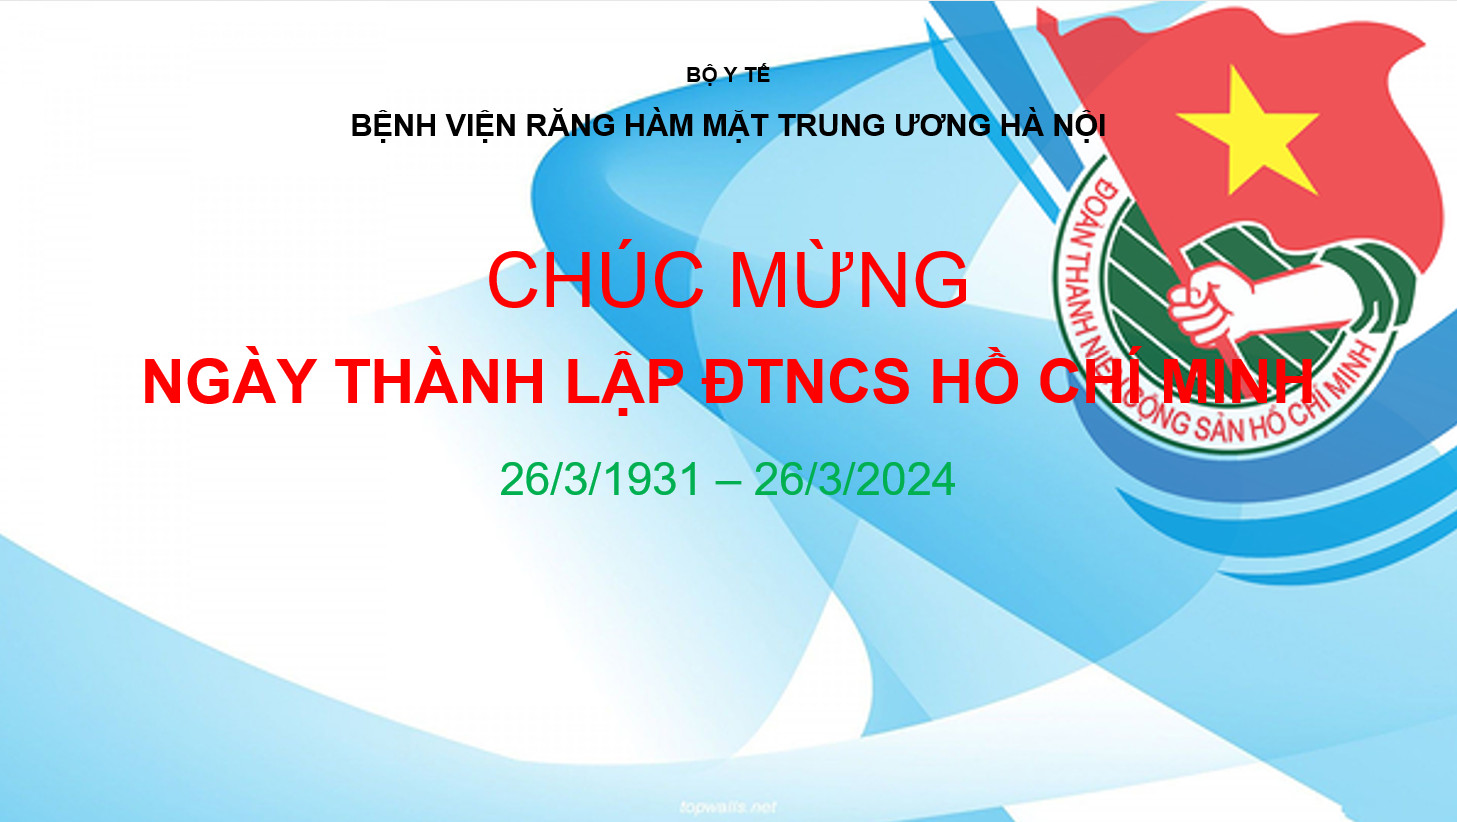 Chúc mừng 93 năm Ngày thành lập Đoàn TNCS Hồ Chí Minh (26/3/1931 - 26/3/2024) 